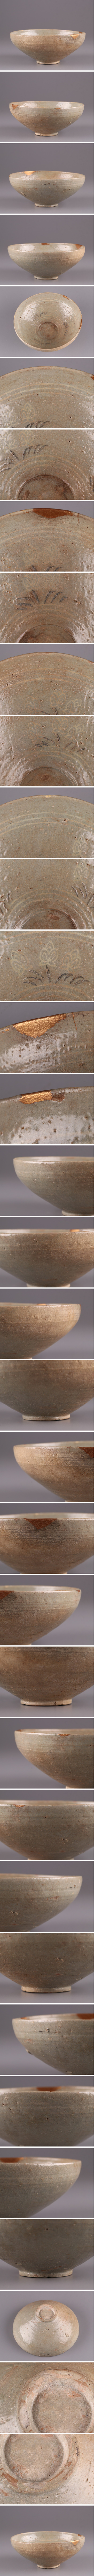 【在庫在庫あ】古美術 朝鮮古陶磁器 高麗青磁 白黒象嵌 鉢 古作 時代物 極上品 初だし品 1177 高麗